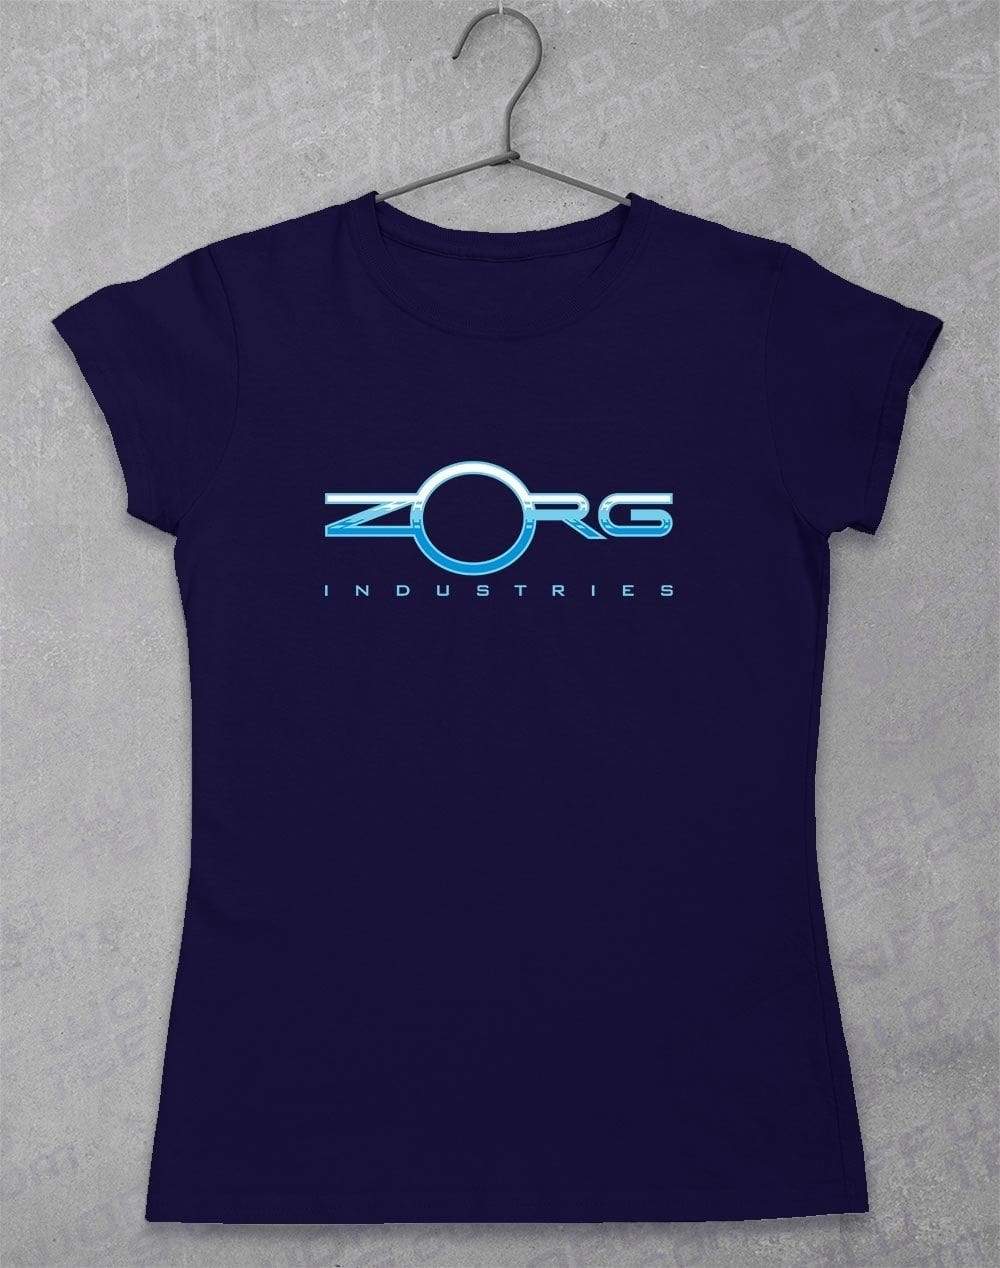 Zorg Women's T-Shirt 8-10 / Navy  - Off World Tees